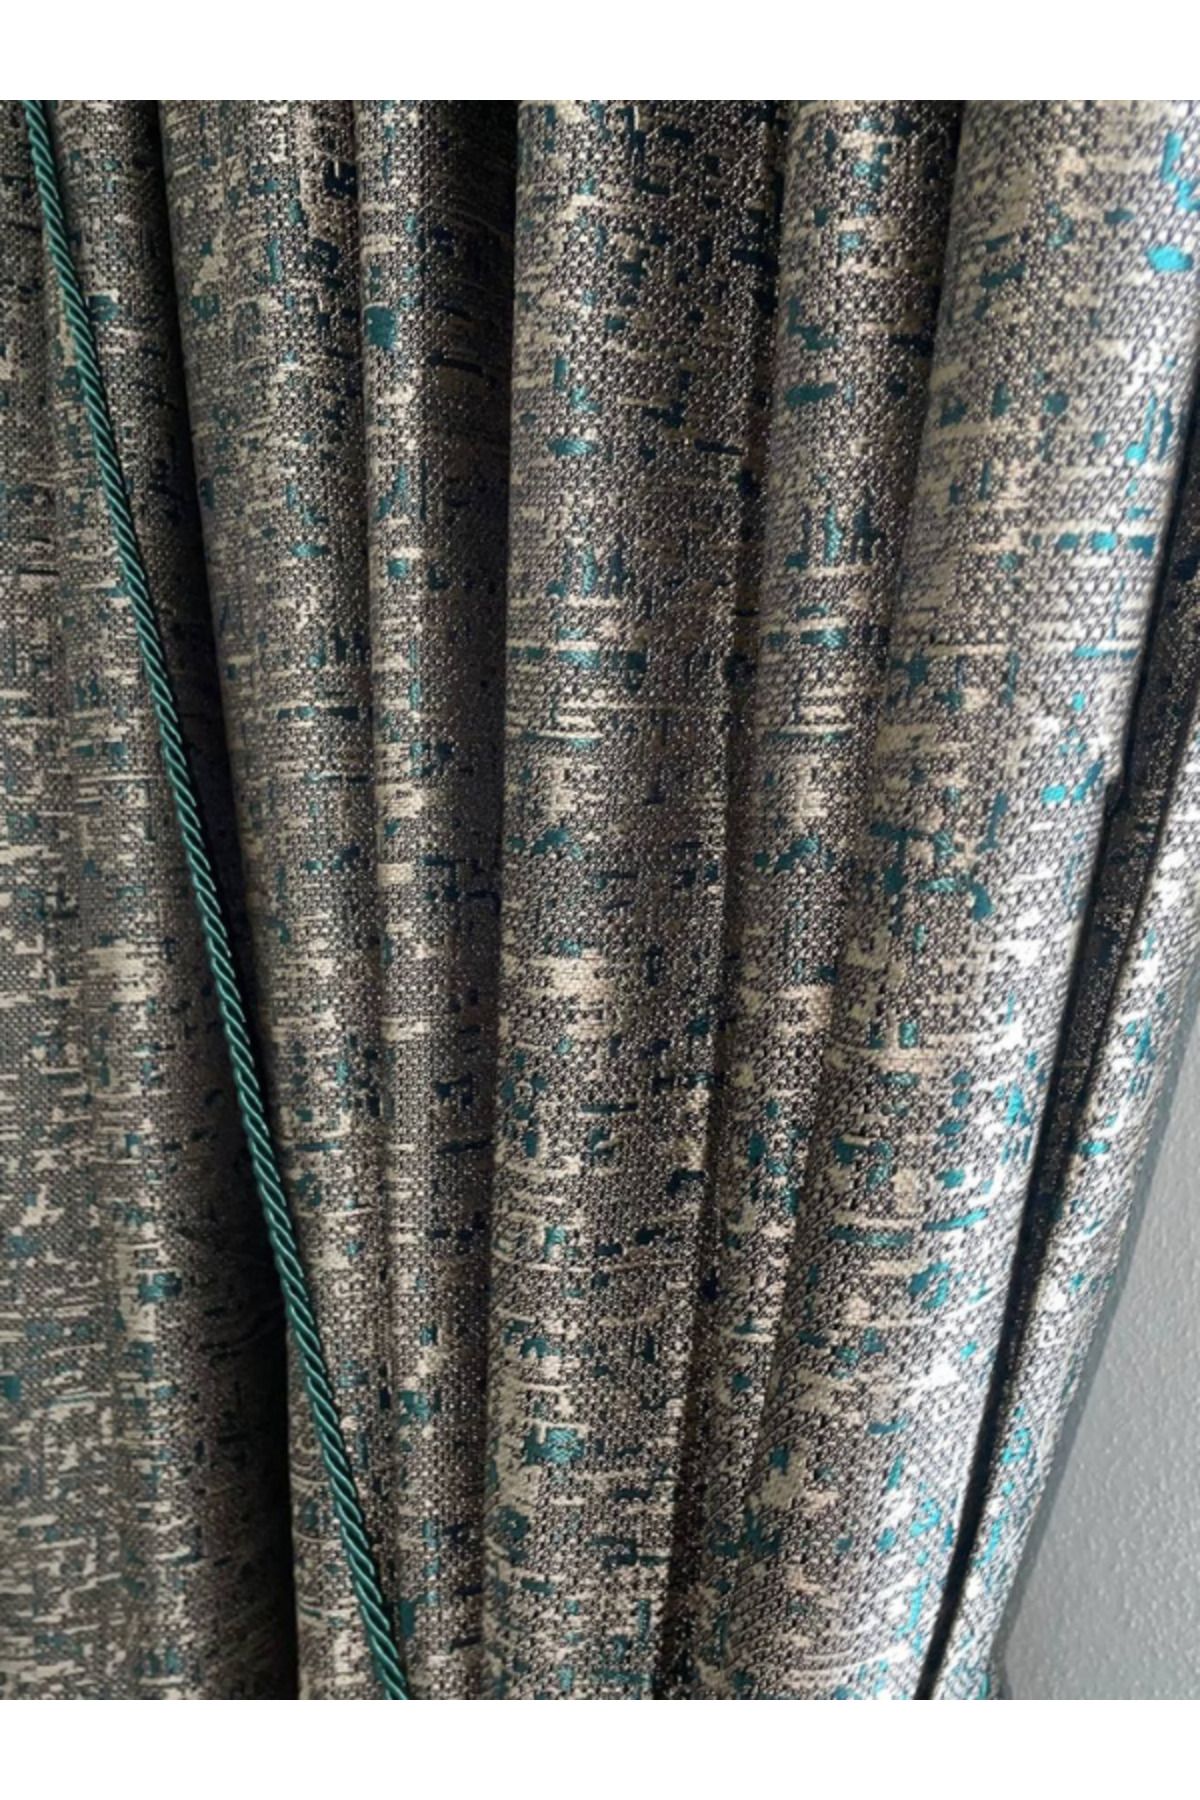 MebelPort Curtain Fon Jakar Perde Perla Desen TEK  KANAT  sık Pileli(1 X 3)